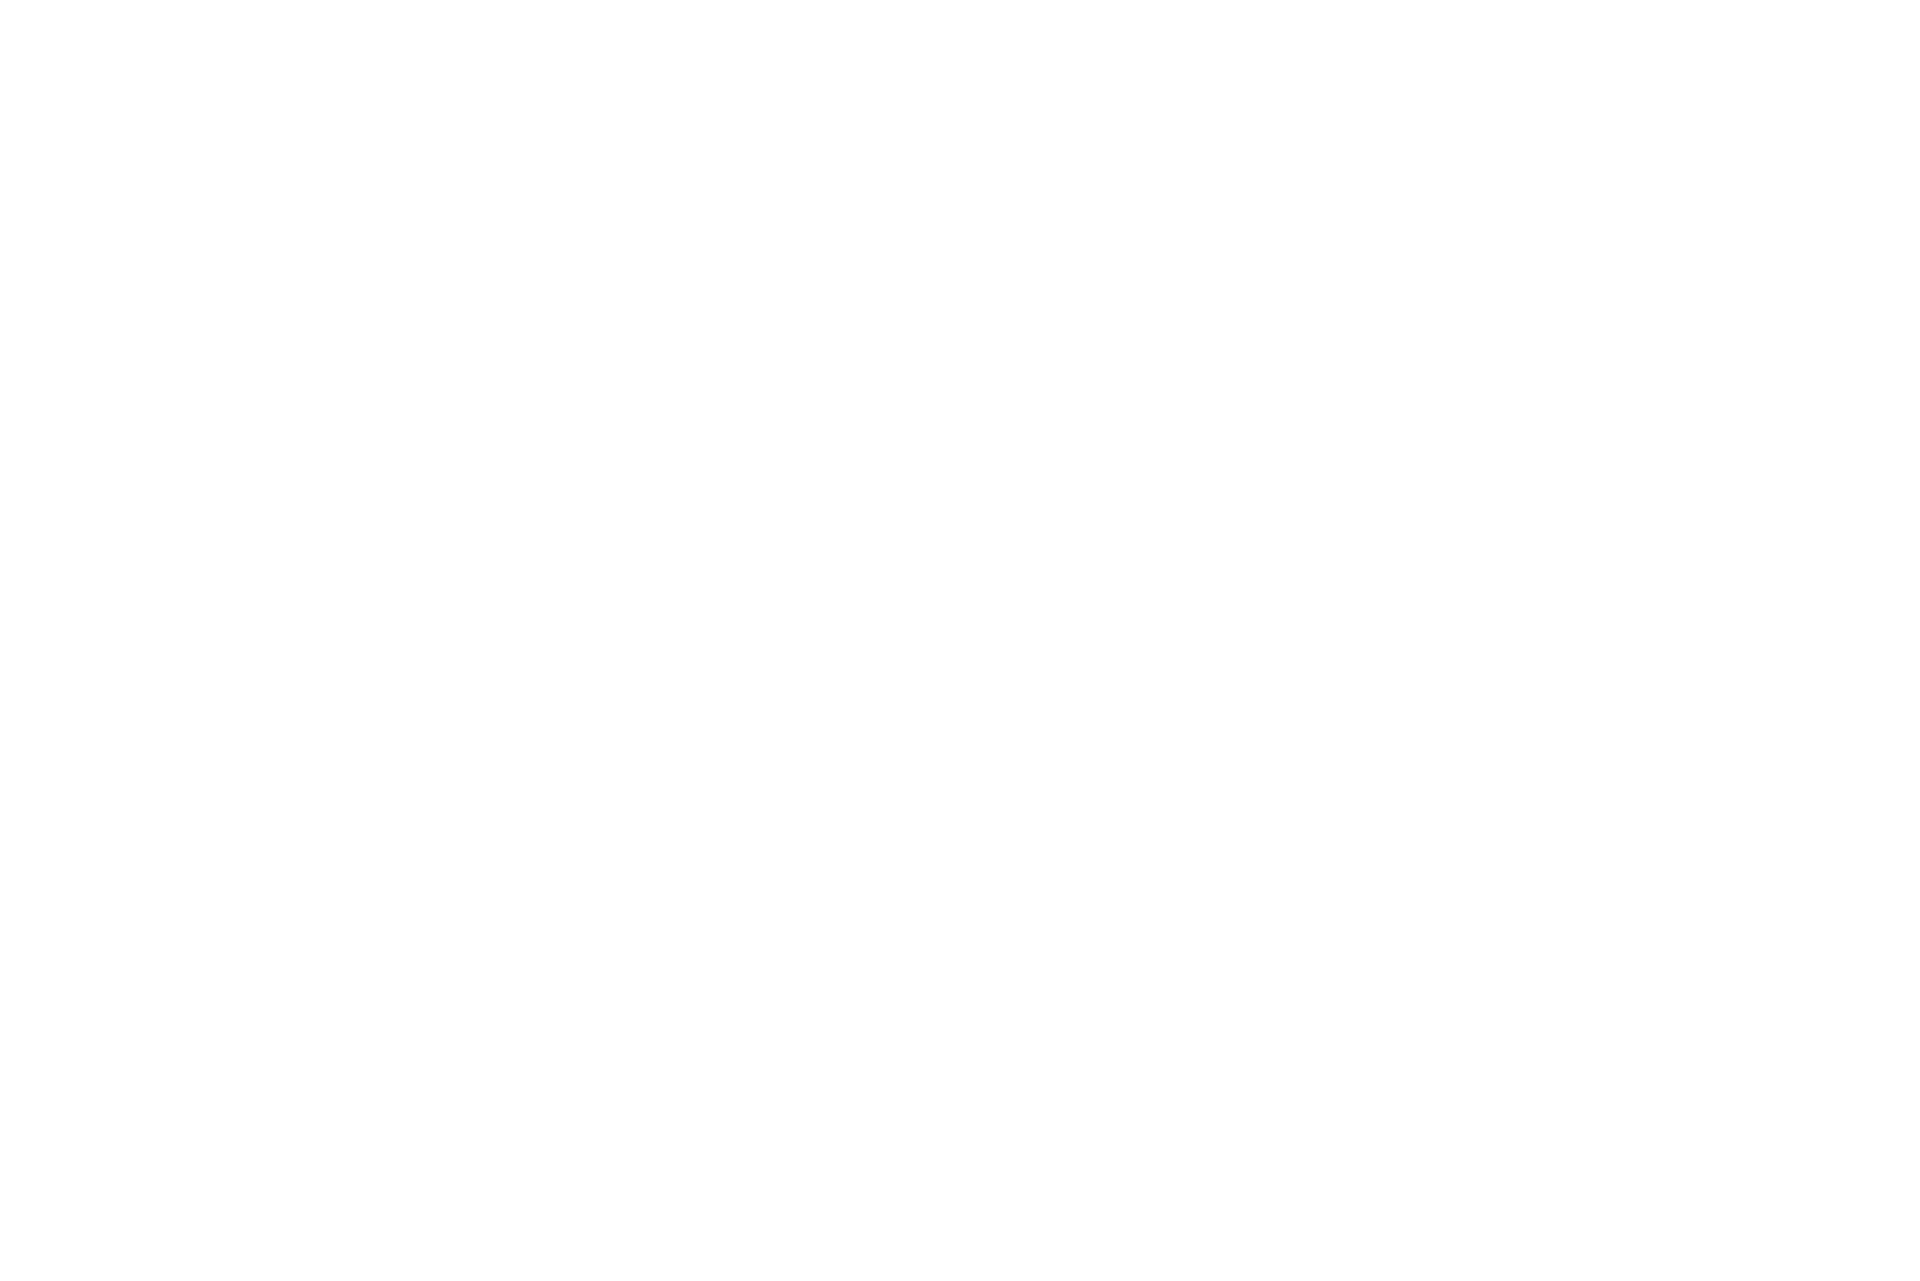 Logo Agile